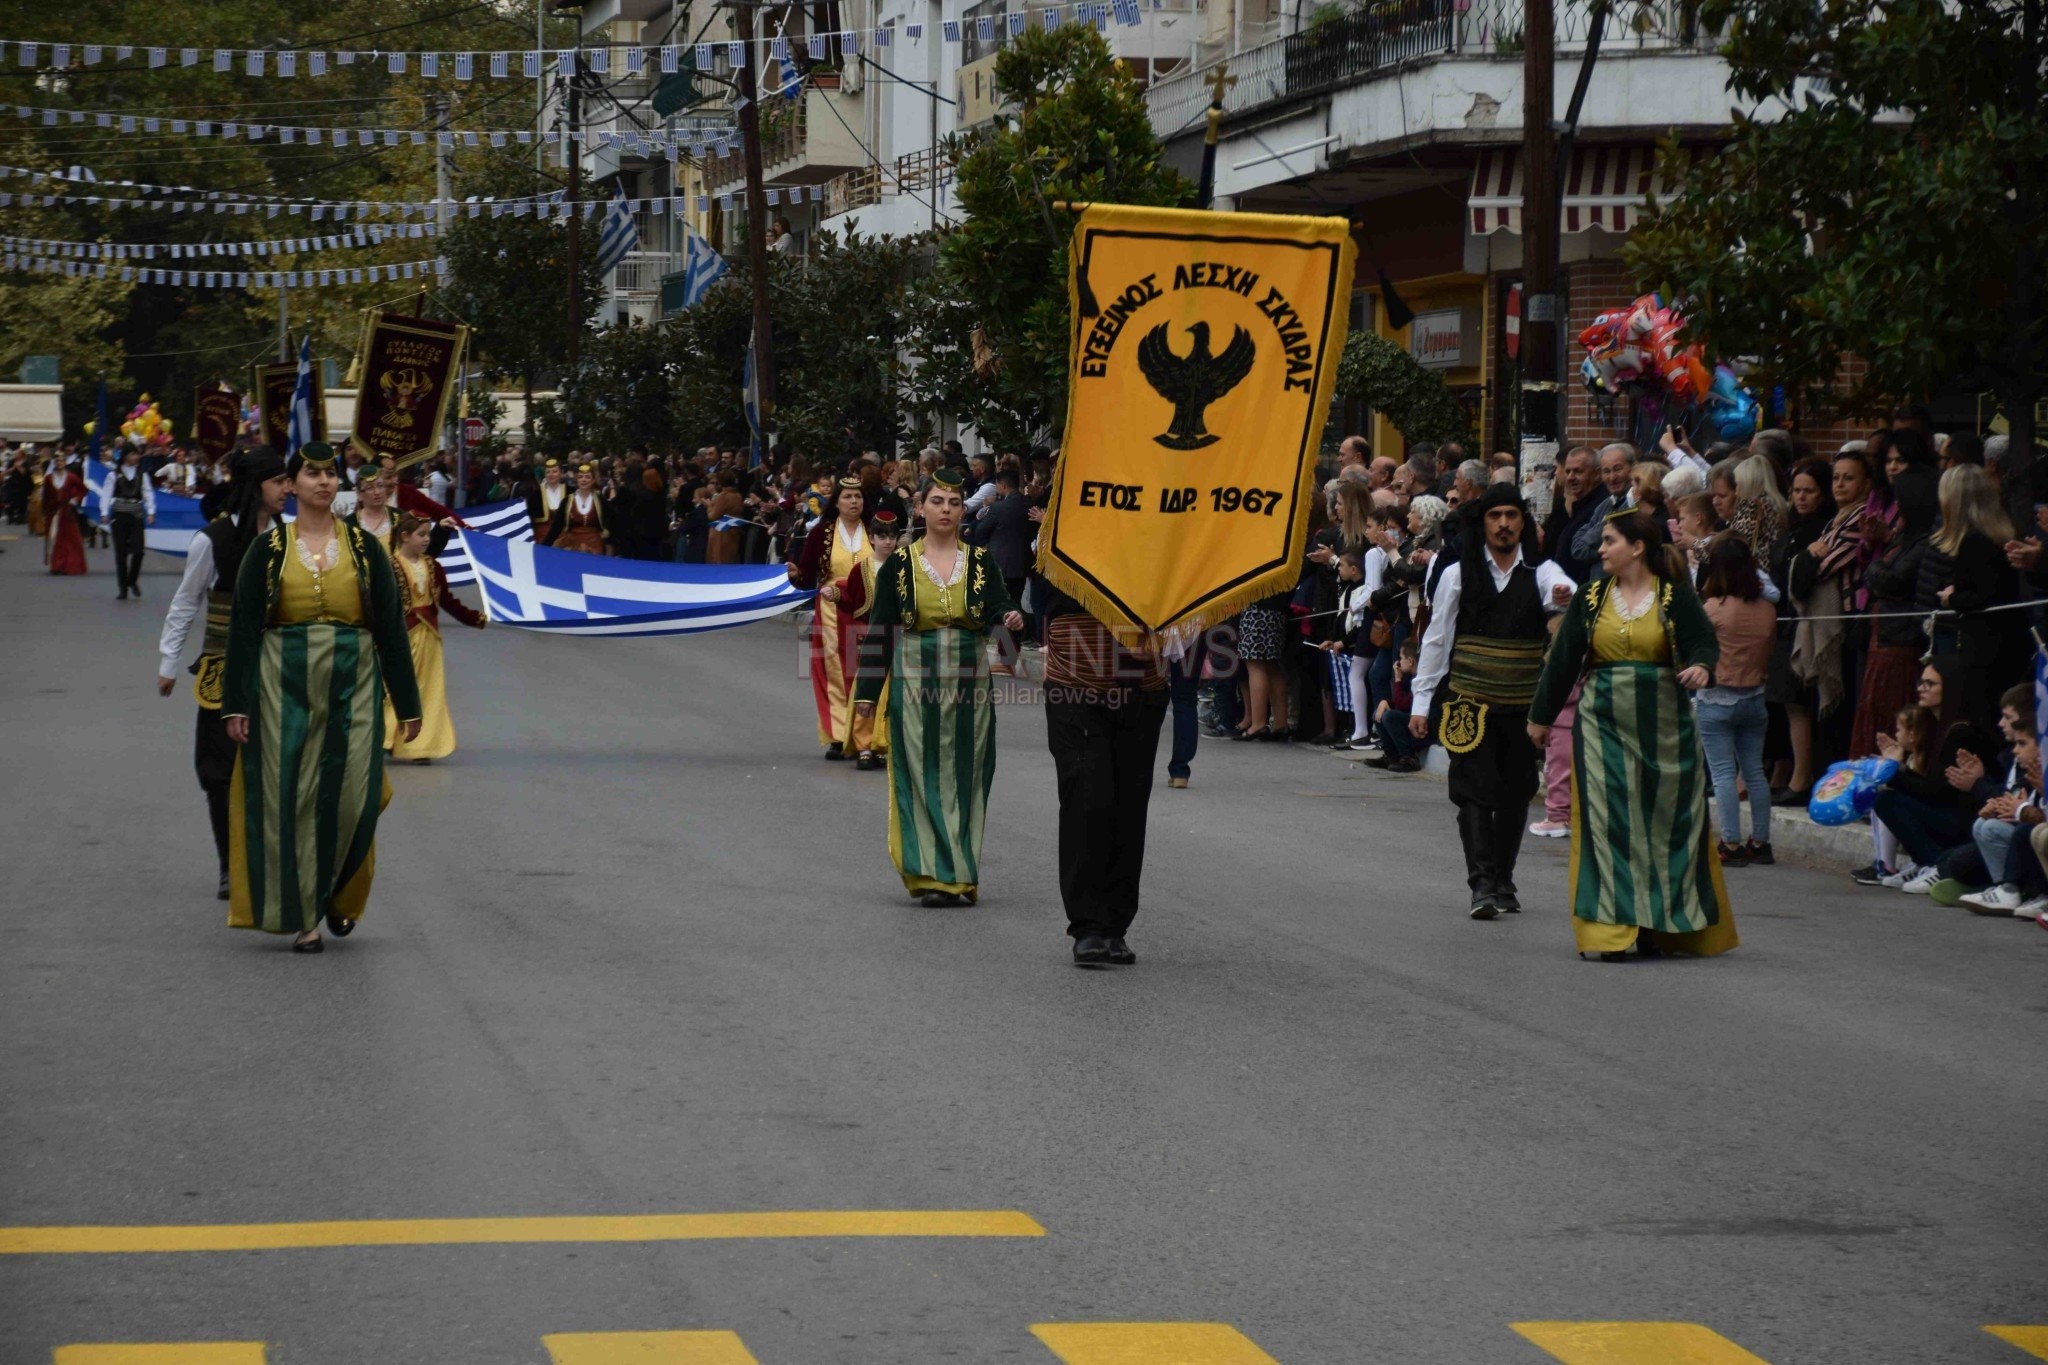 28η Οκτωβρίου στη Σκύδρα: τίμησαν την επέτειο του 'ΟΧΙ" οι πολιτιστικοί σύλλογοι